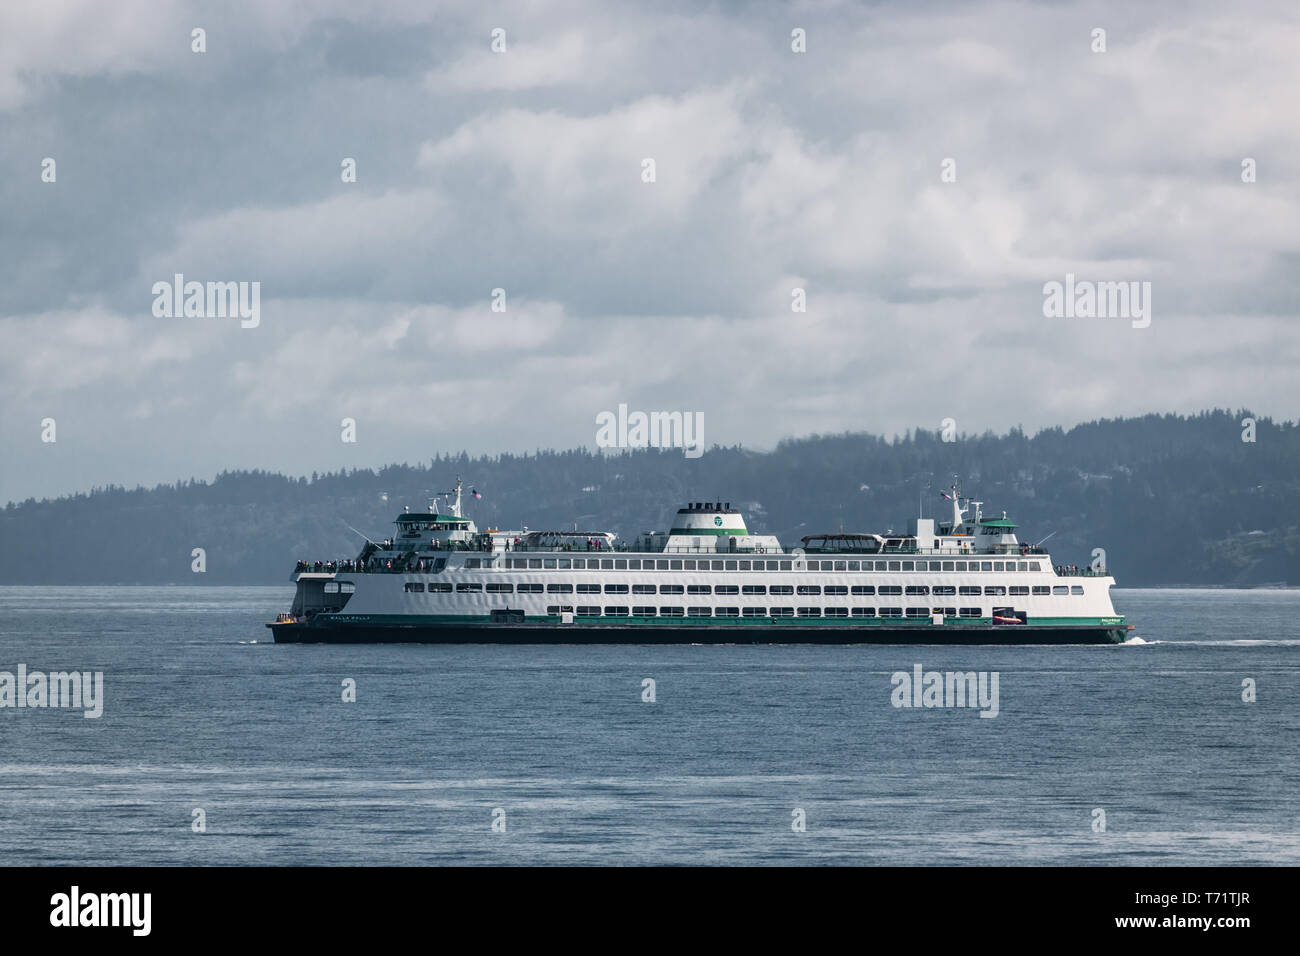 Il traghetto Walla Walla fa il suo modo su un nuvoloso giorno di estate da Bainbridge Island a Seattle nel Puget Sound, nello stato di Washington. Foto Stock